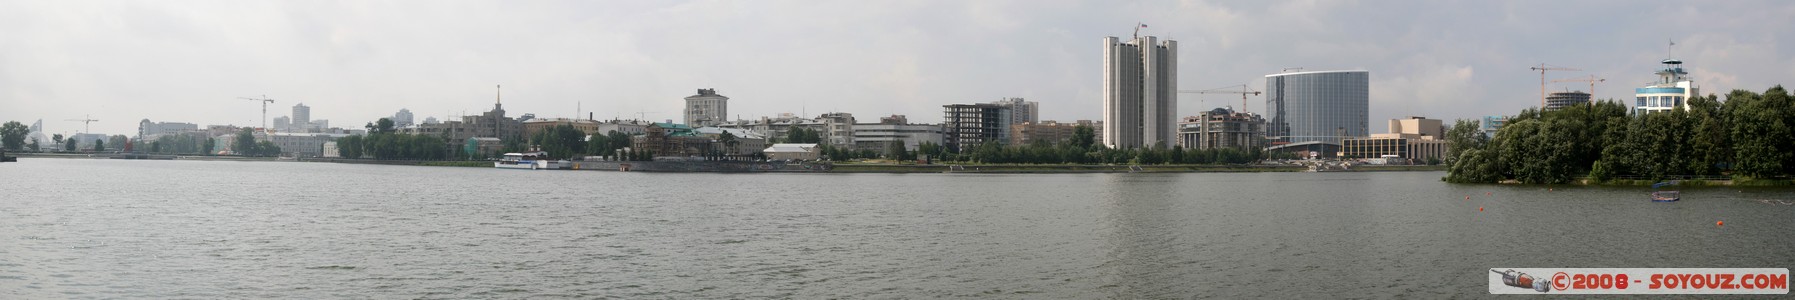 Ekaterinburg - Bassin Municipal - panorama
Mots-clés: panorama